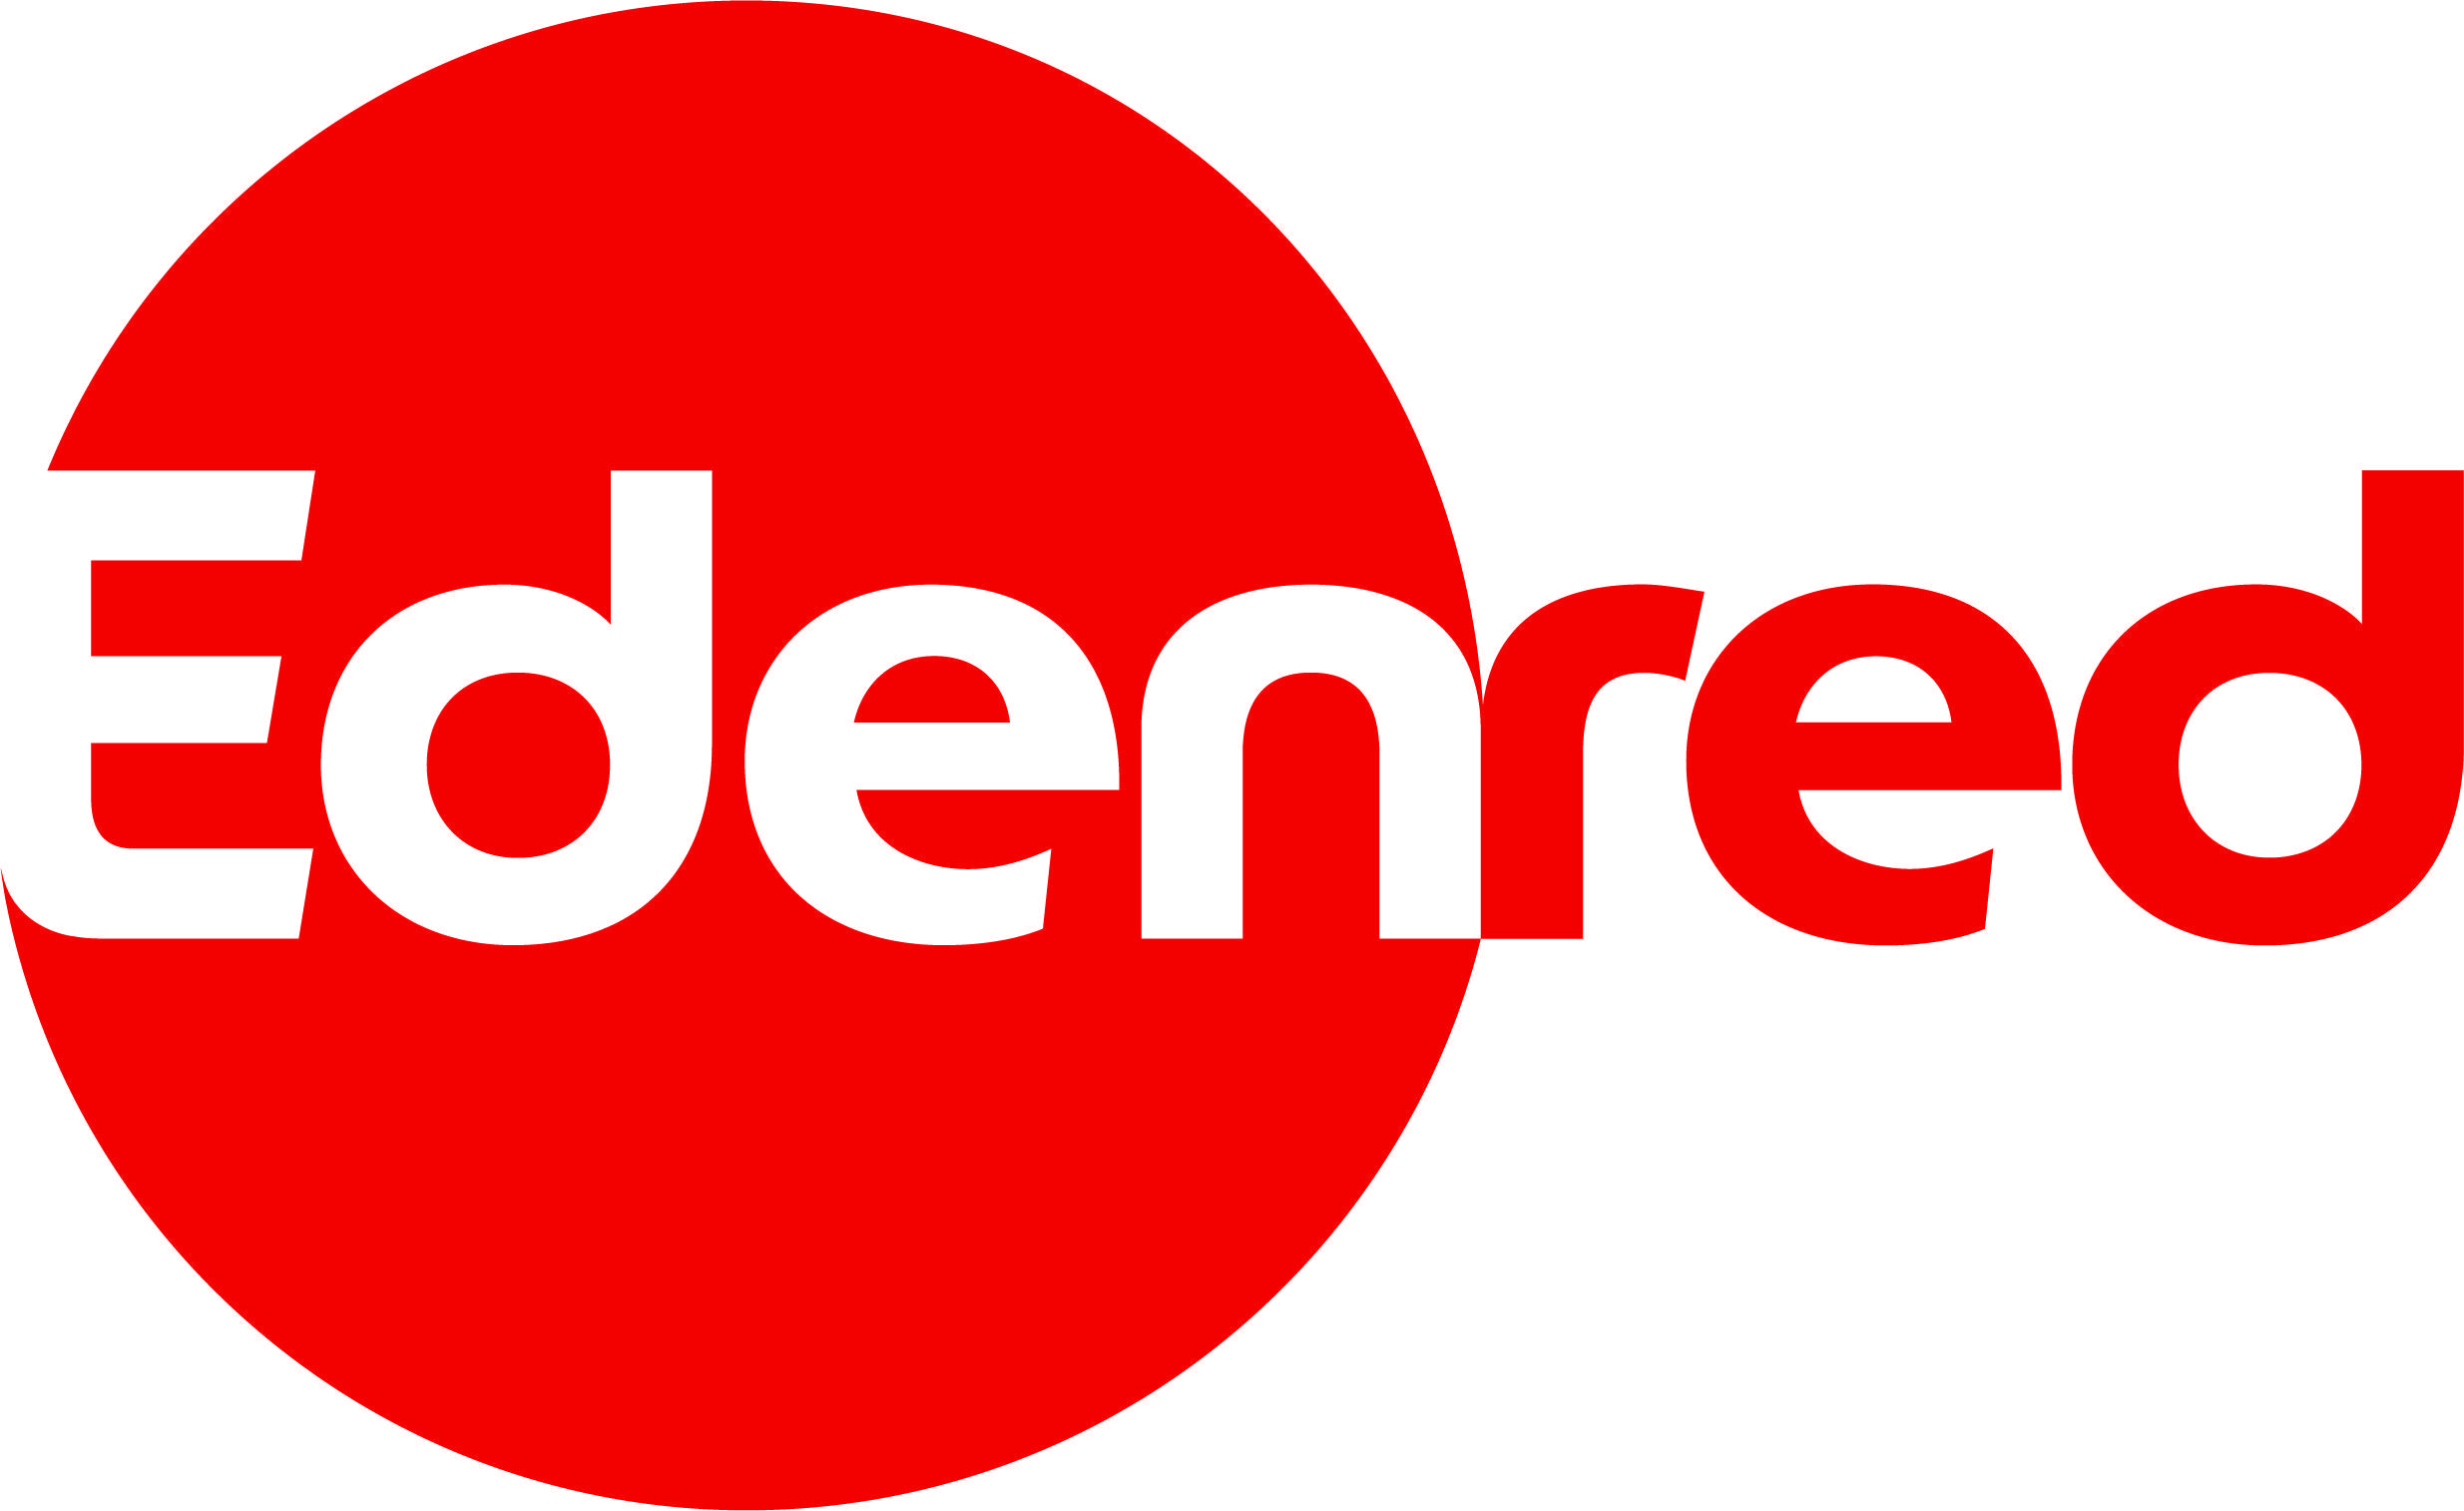 Edenred logo.jpg